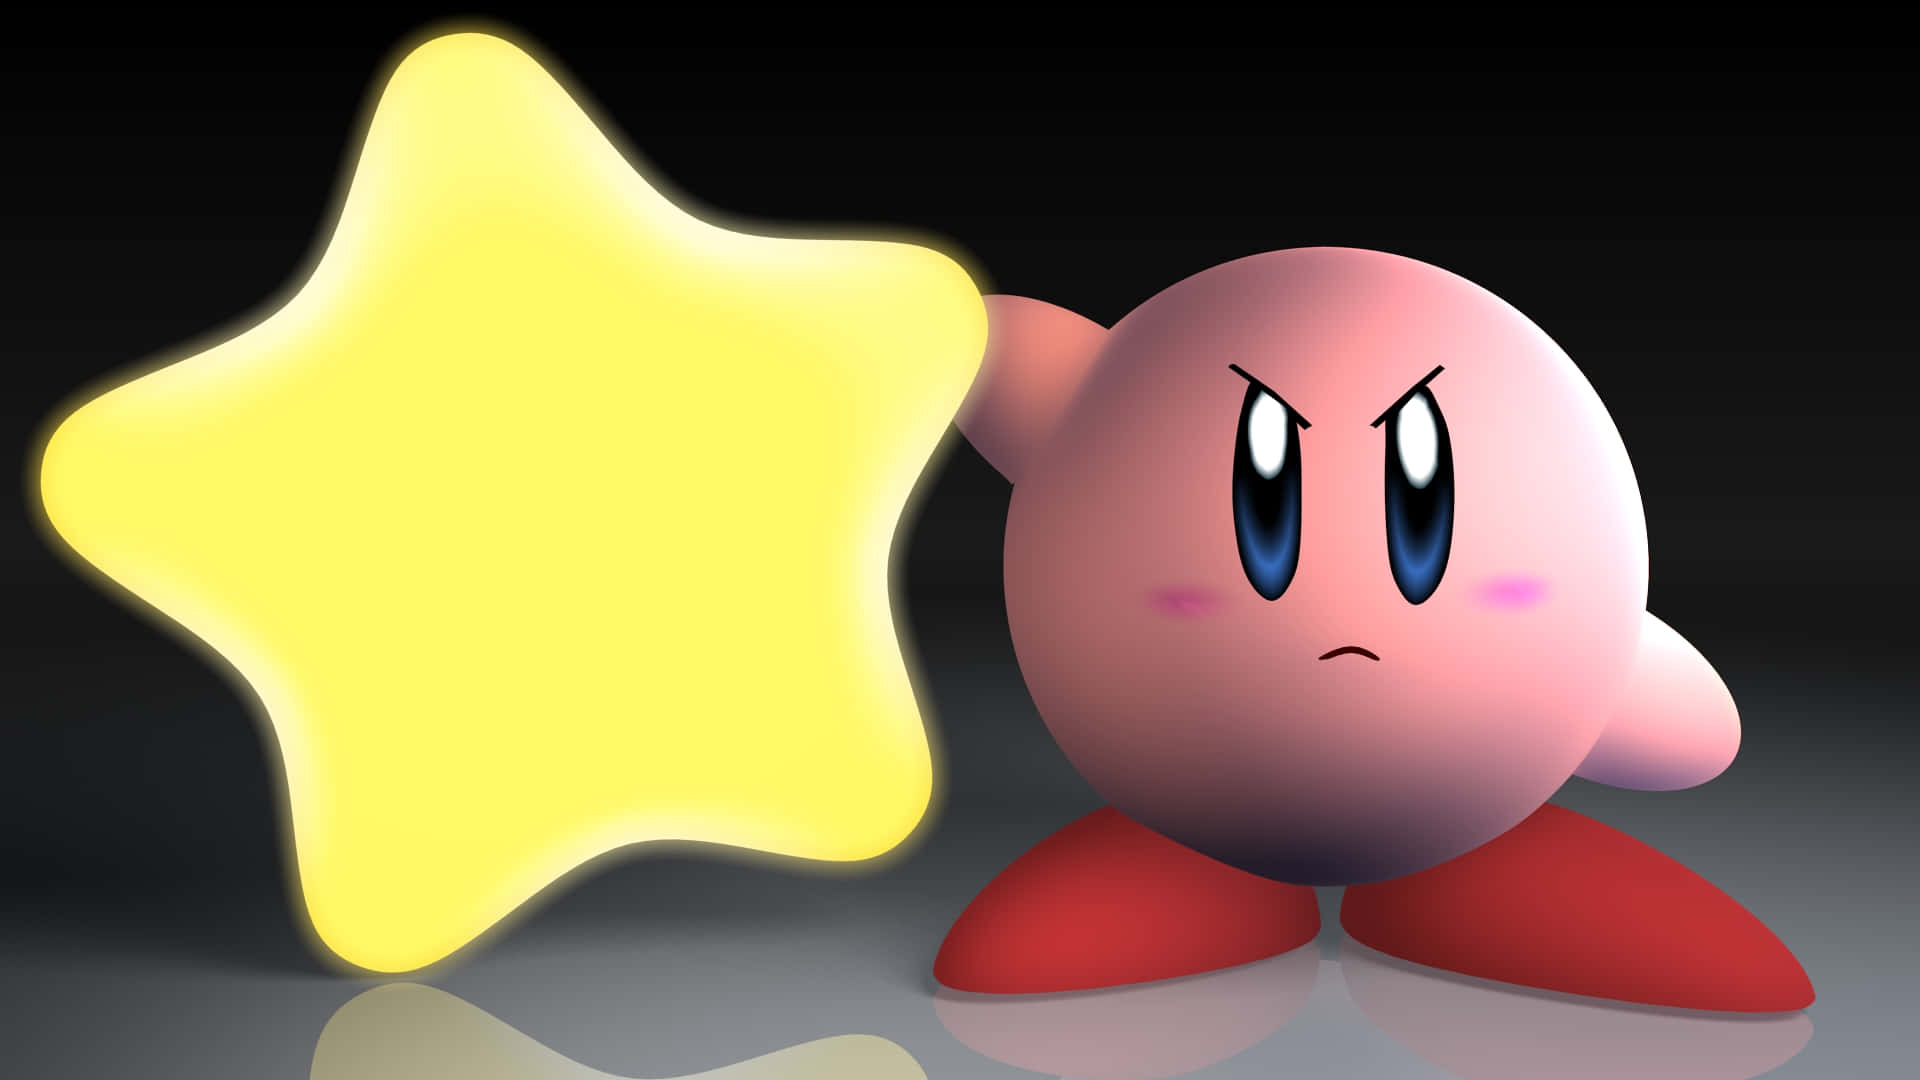 Kirbybusca Desafiar A Las Autoridades En Su Aventura En Plataformas.